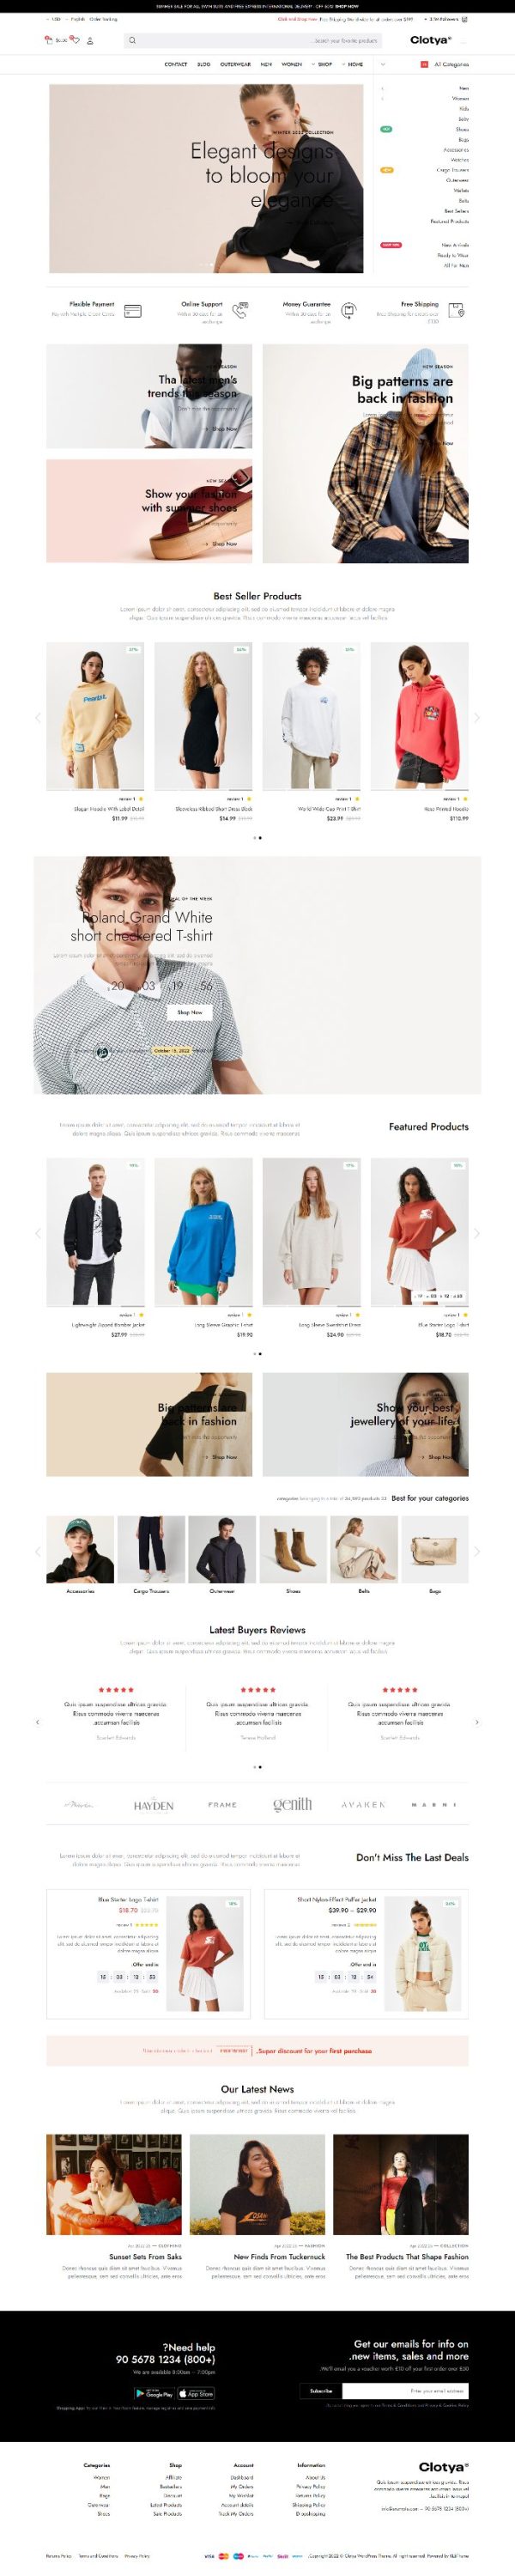 Mẫu website bán hàng thời trang - Clotya